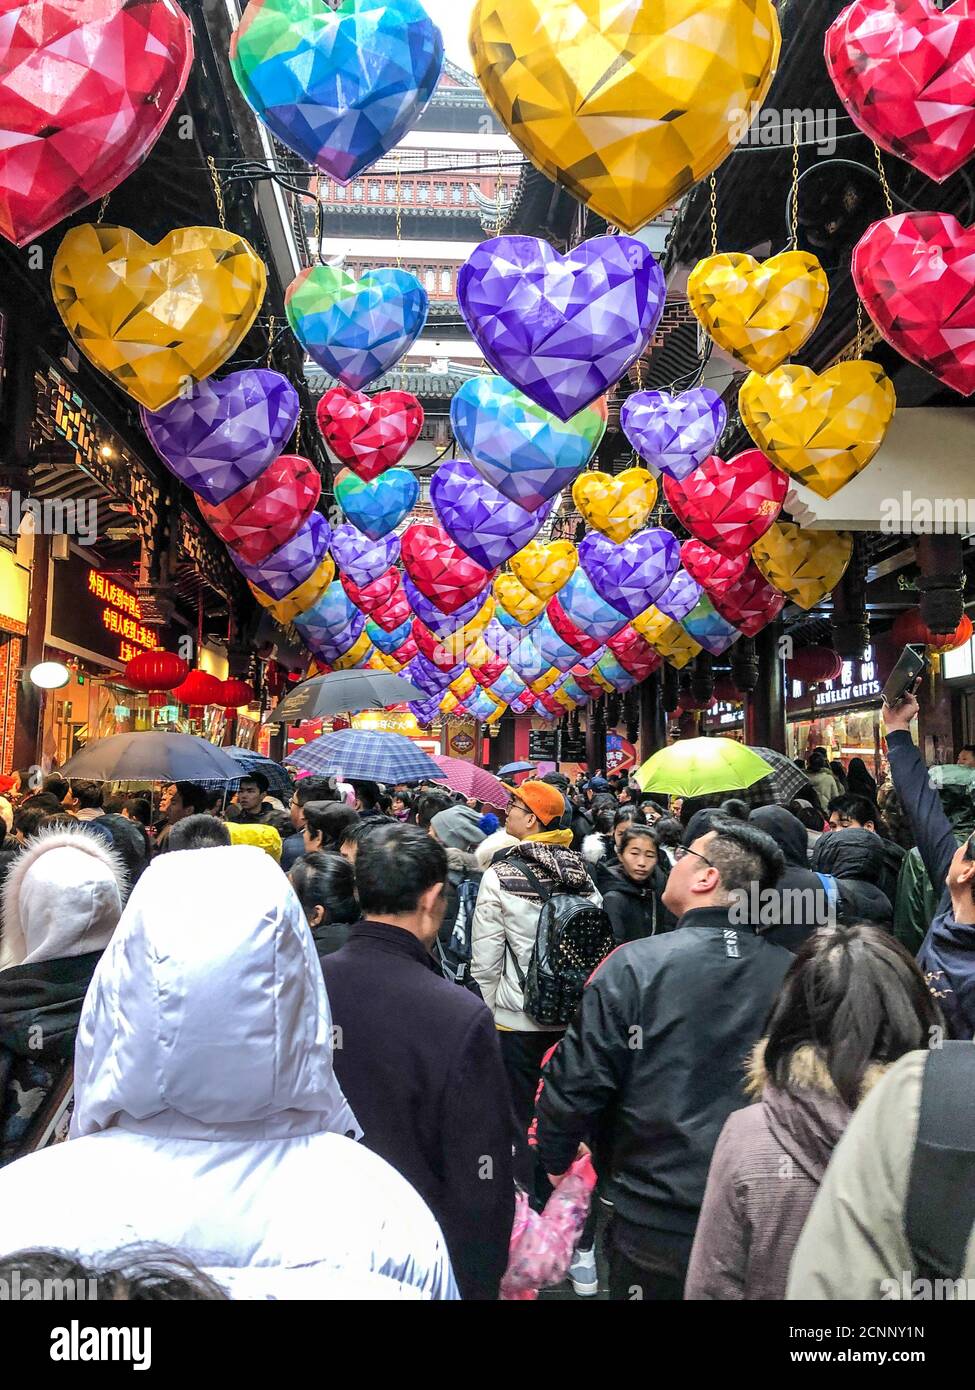 Lanternes en forme de cœur accrochées au plafond dans des endroits couronnés Avec des magasins et de la nourriture pendant le festival du nouvel an chinois Banque D'Images